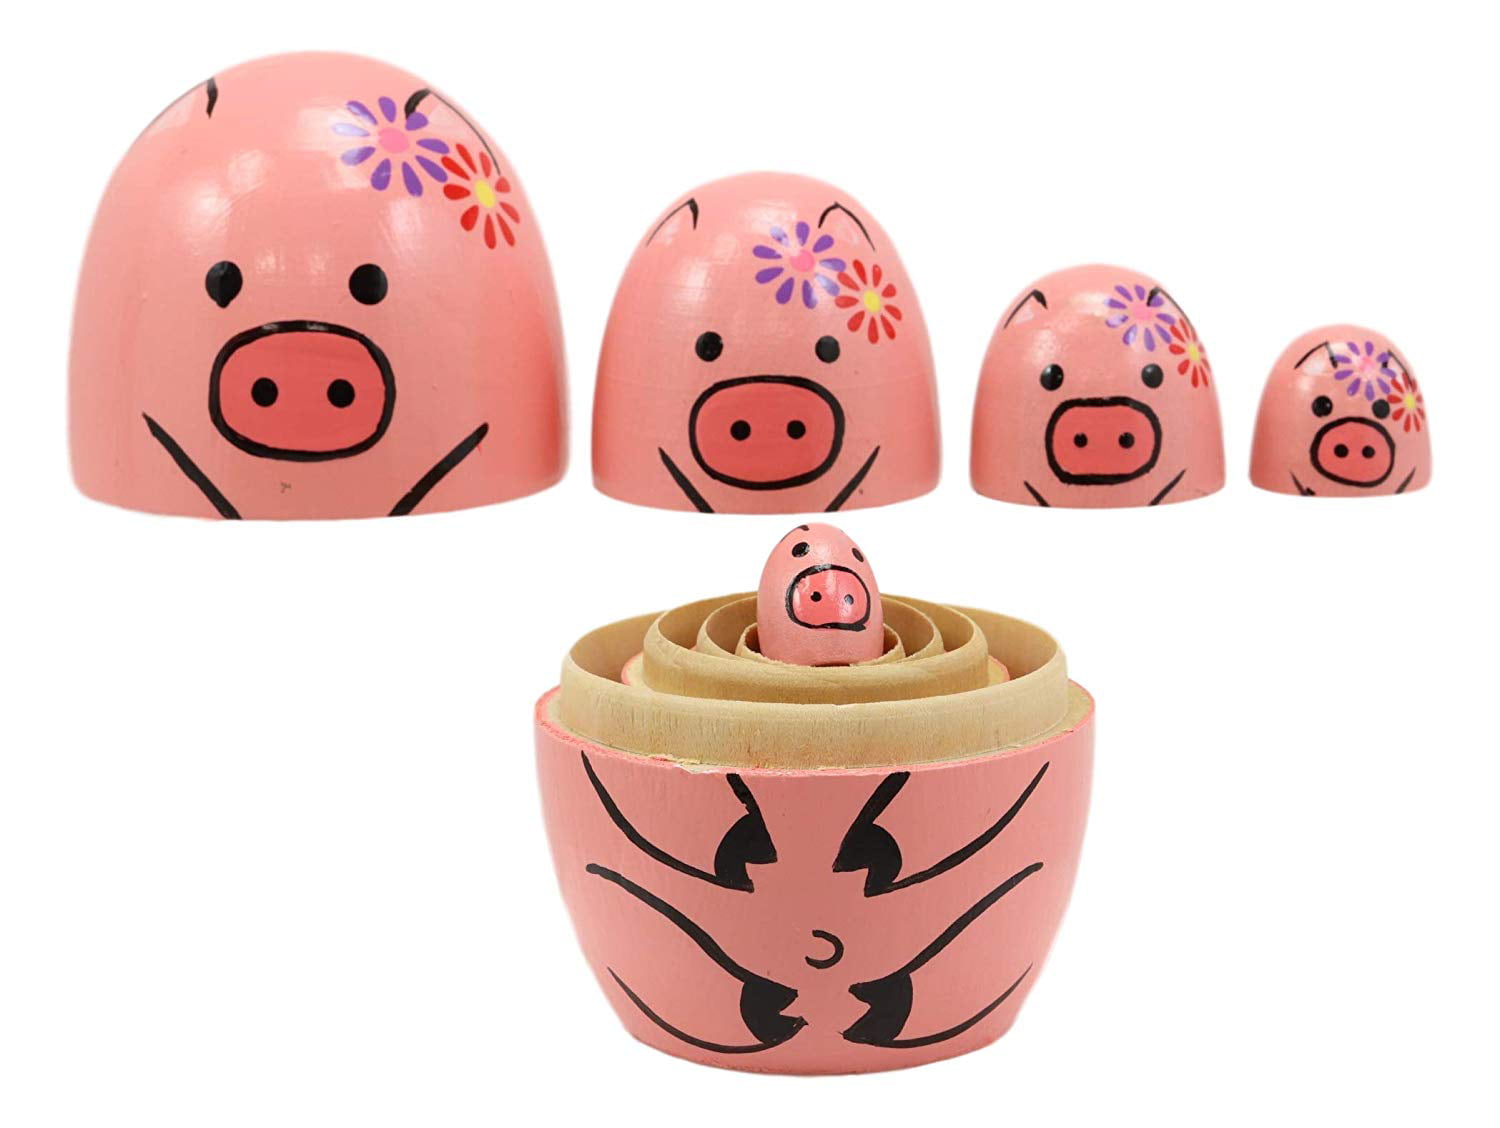 Peppa Pig Nesting Stacking Dolls Matryoshka Toys Set 7 dolls 5.3 in